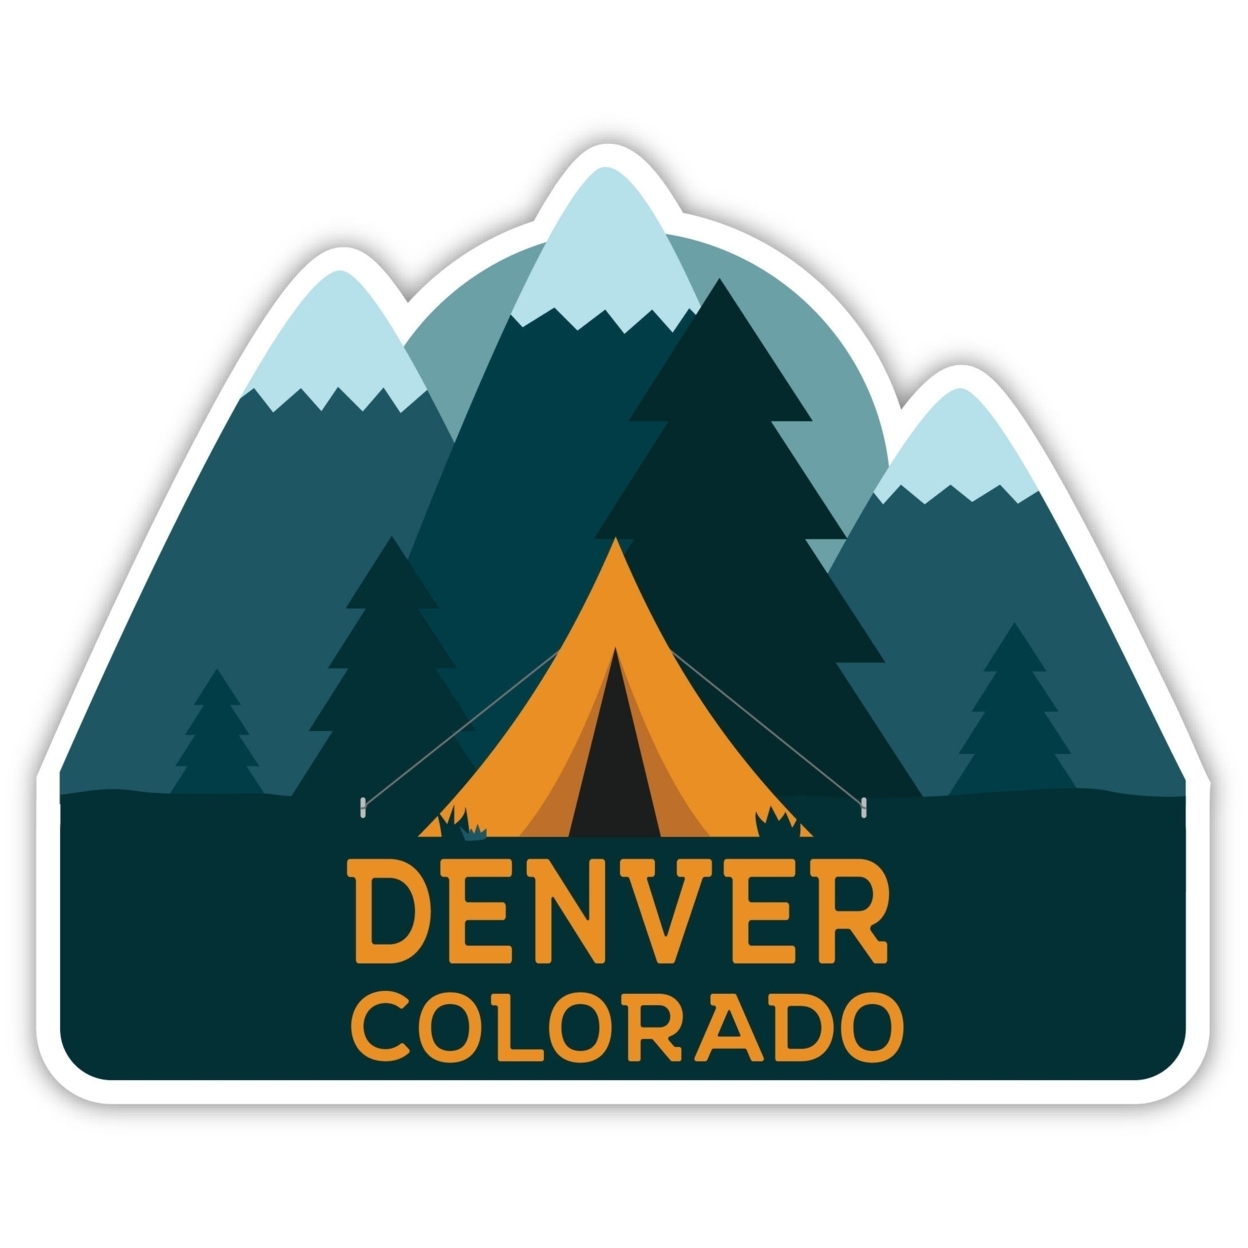 Denver Colorado Souvenir Decorative Stickers (Choose Theme And Size) - Single Unit, 6-Inch, Tent